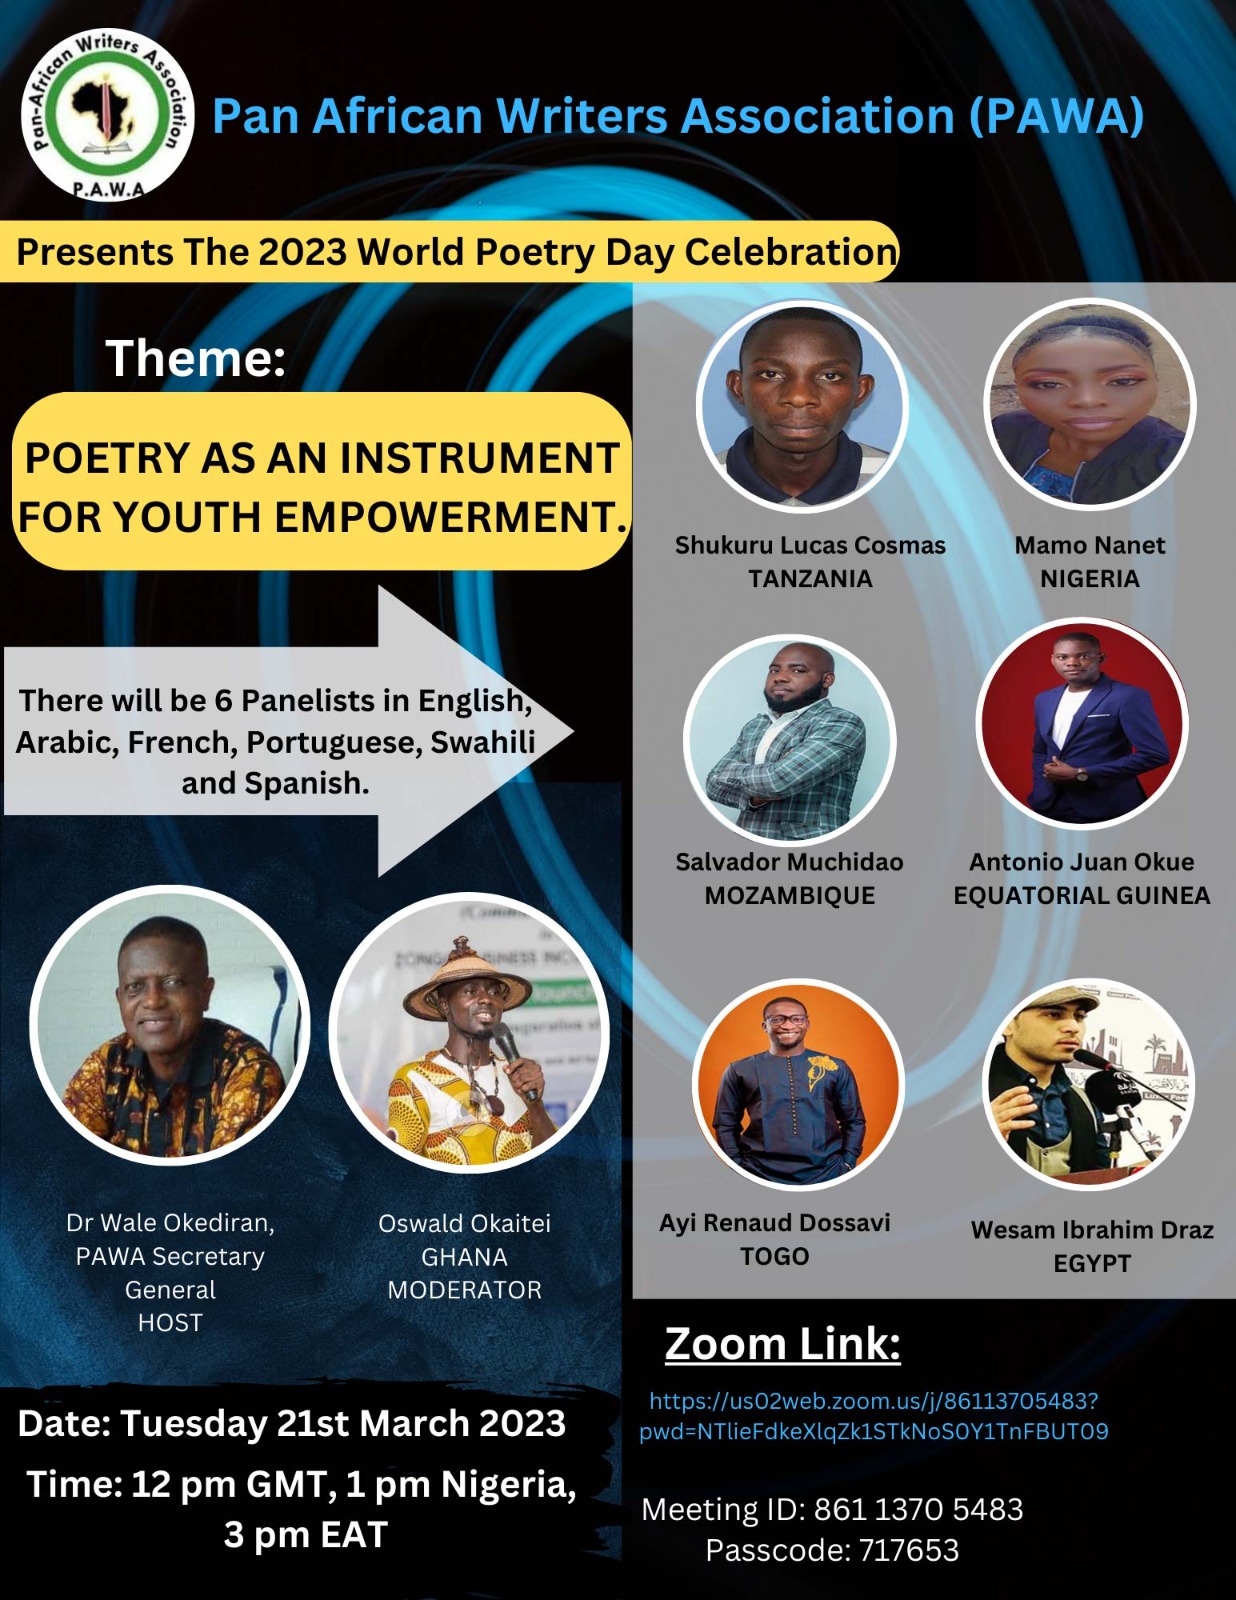 الشعر كأداة لتمكين الشباب | ندوة اتحاد الكتاب الأفارقة لشعراء القارة